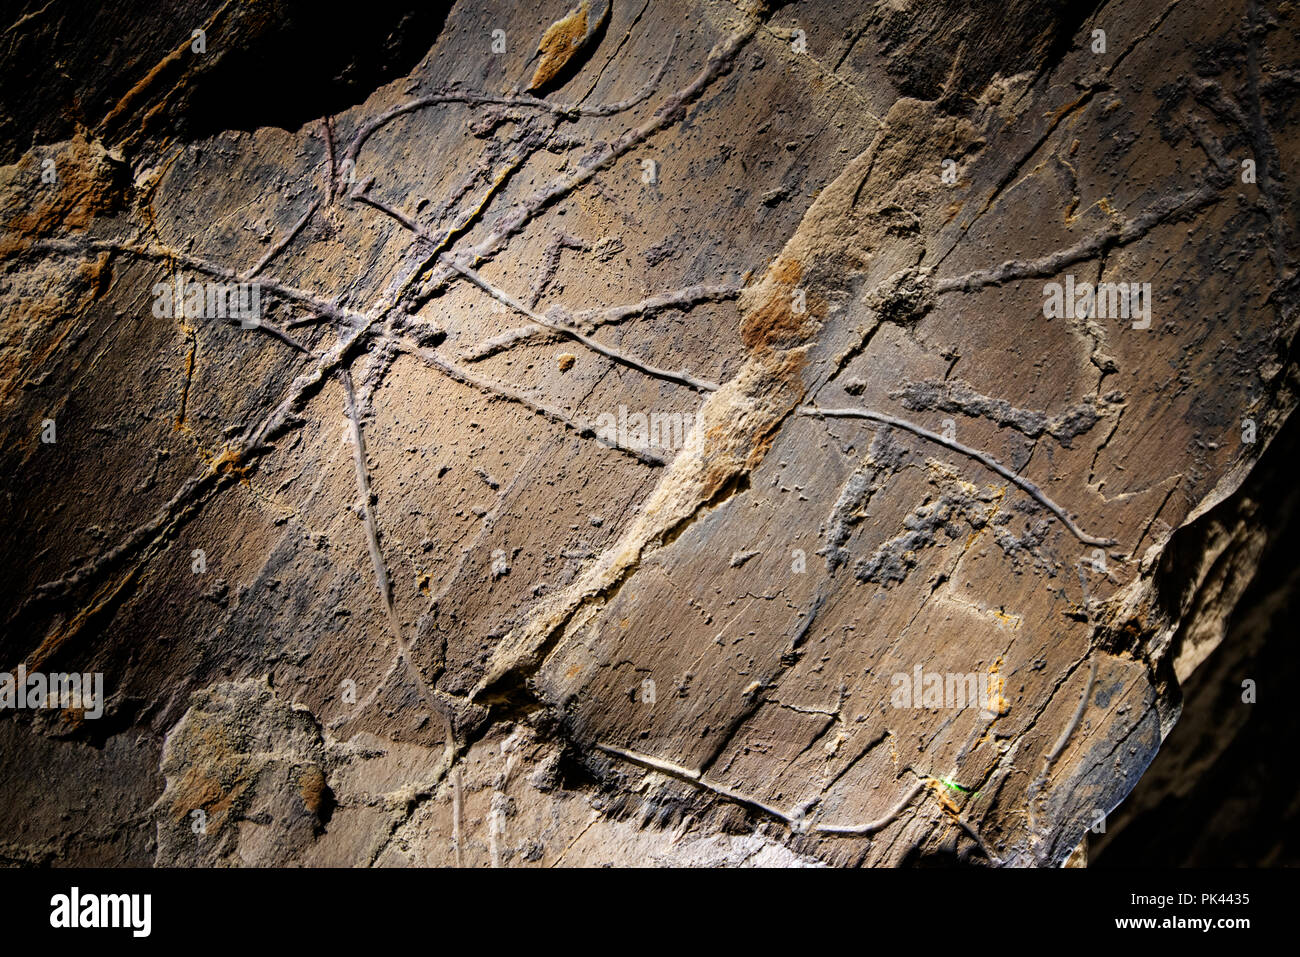 El arte rupestre prehistórico del Valle del COA, Parque Arqueológico ( Parque Arqueologico do Vale do Côa), un sitio de Patrimonio Mundial de la UNESCO. Vila Nova de Foz Côa, Alto D Foto de stock